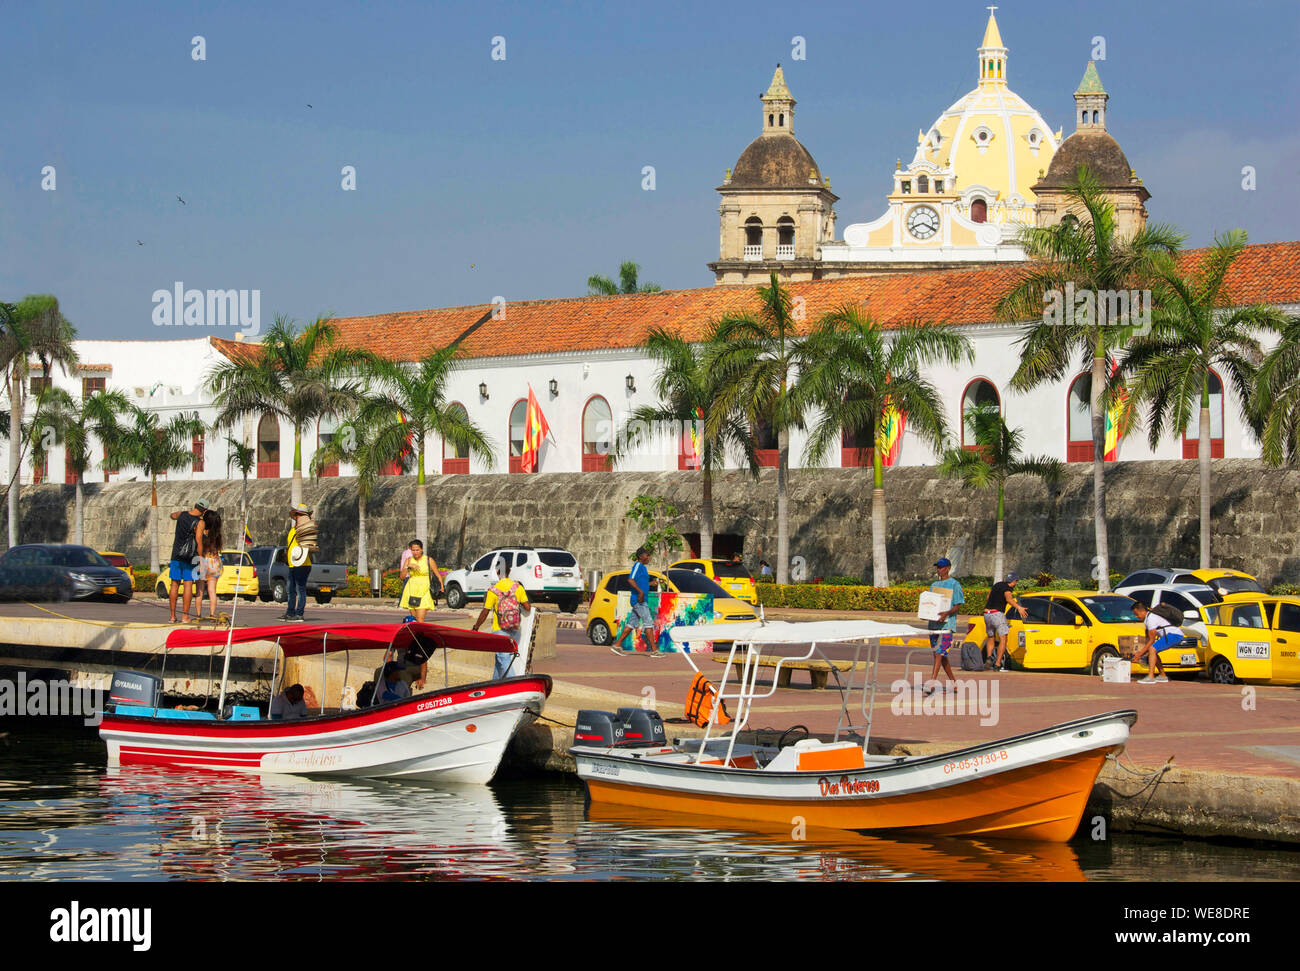 La Colombie, Département de Bolivar, Carthagène, inscrite au patrimoine mondial de l'UNESCO, les bateaux de plaisance dans le port avec les toits de l'église de San Pedro Claver en arrière-plan Banque D'Images